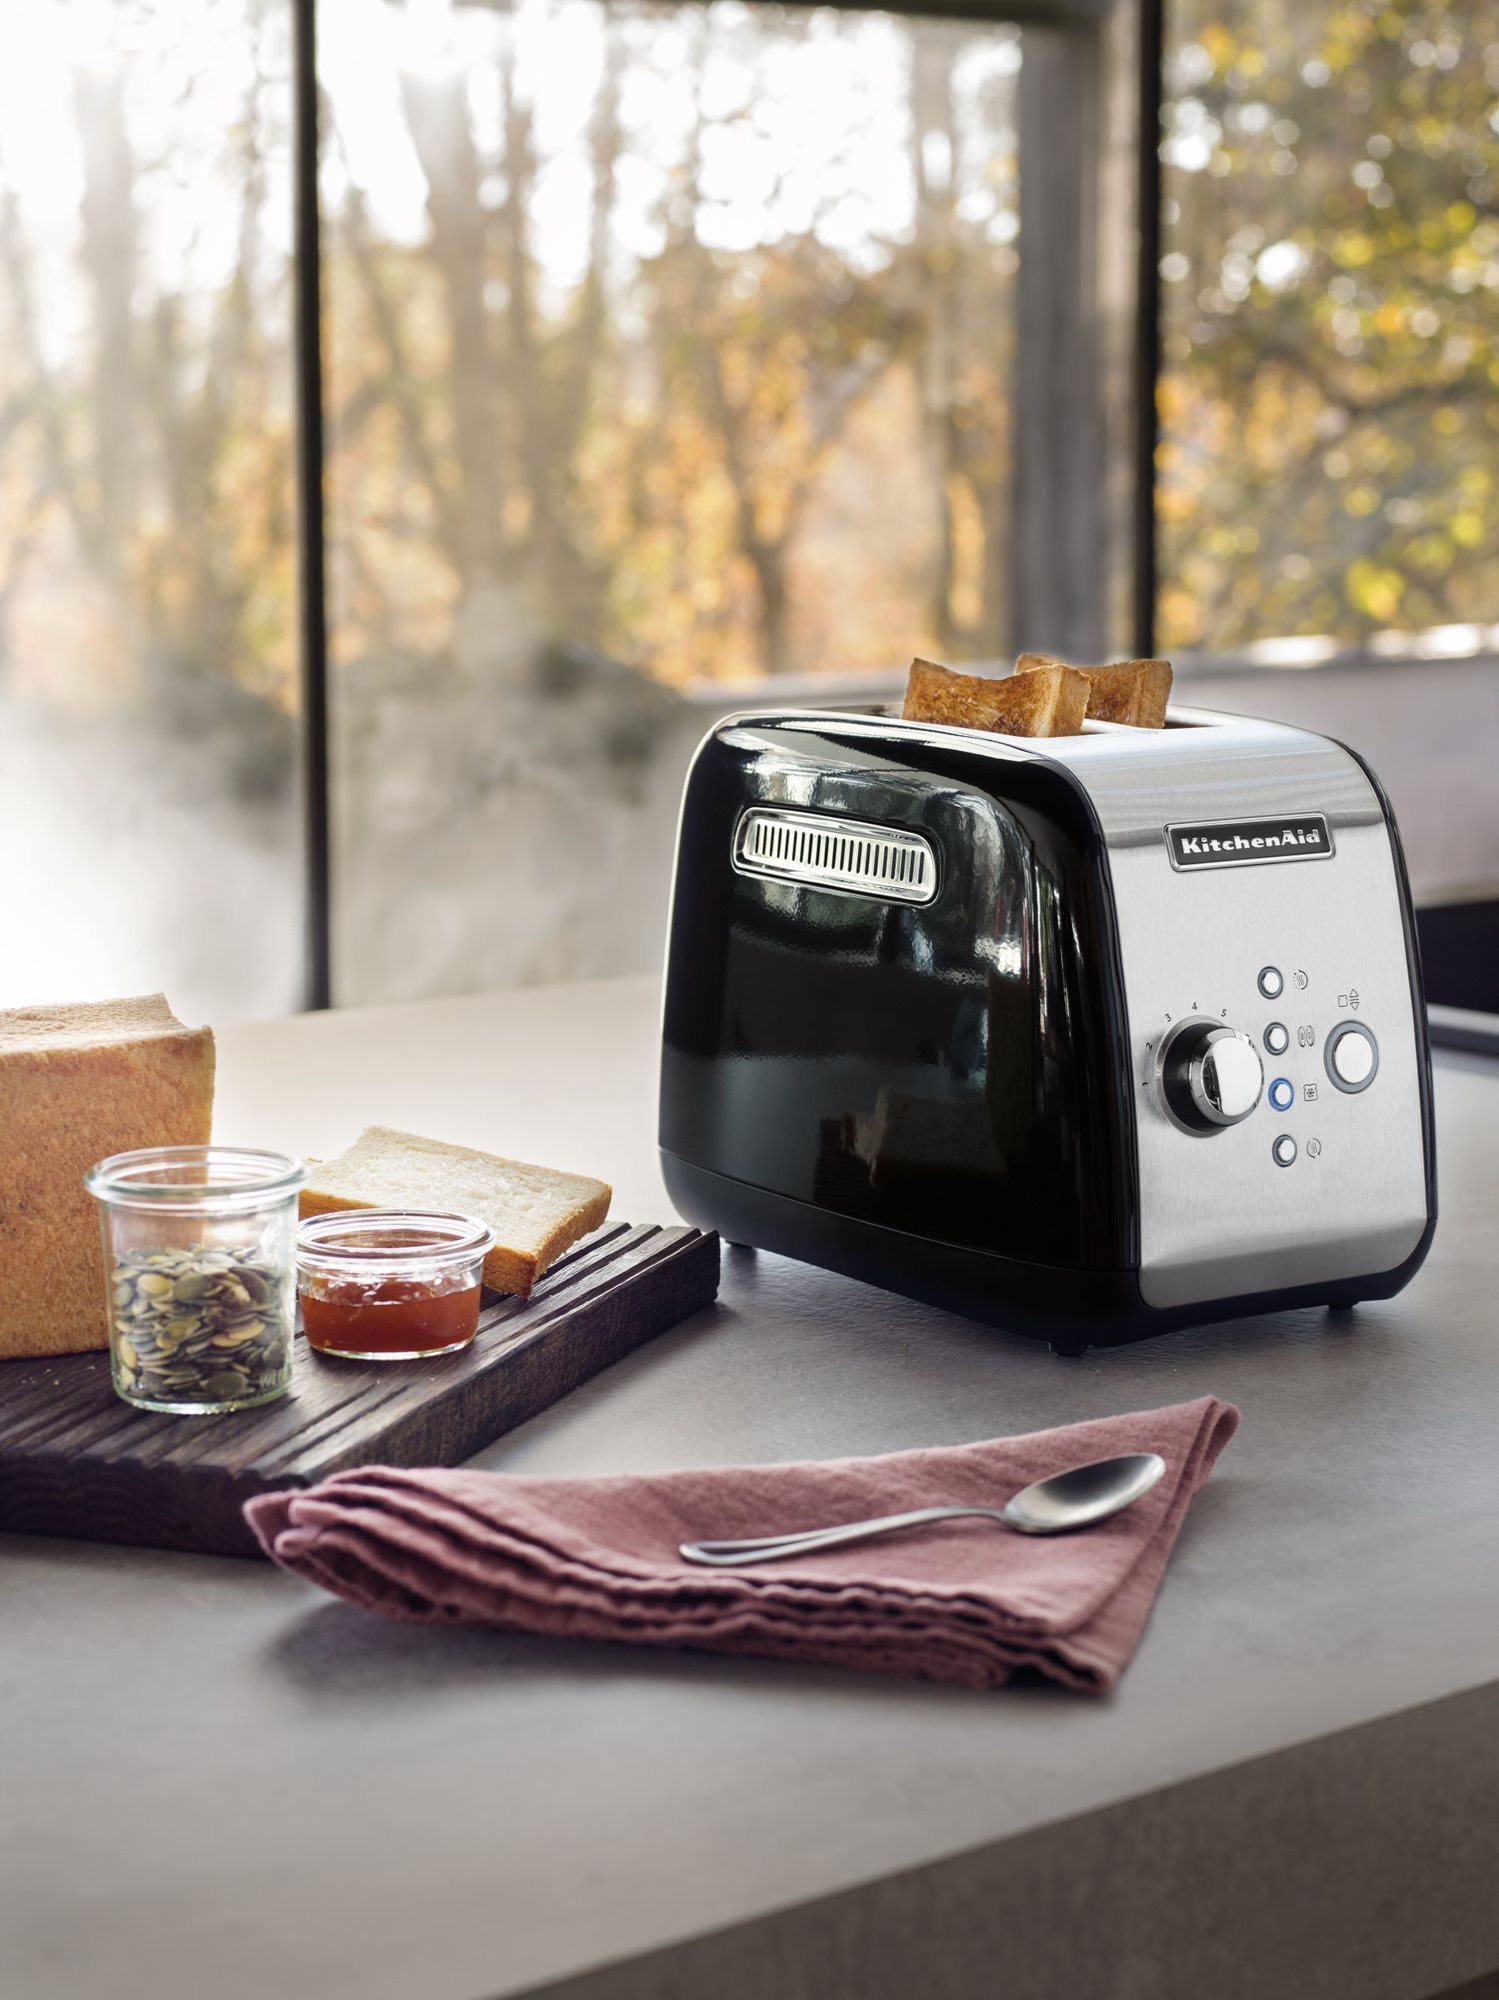 2-slot Artisan toaster, 1250W, Pistachio - KitchenAid